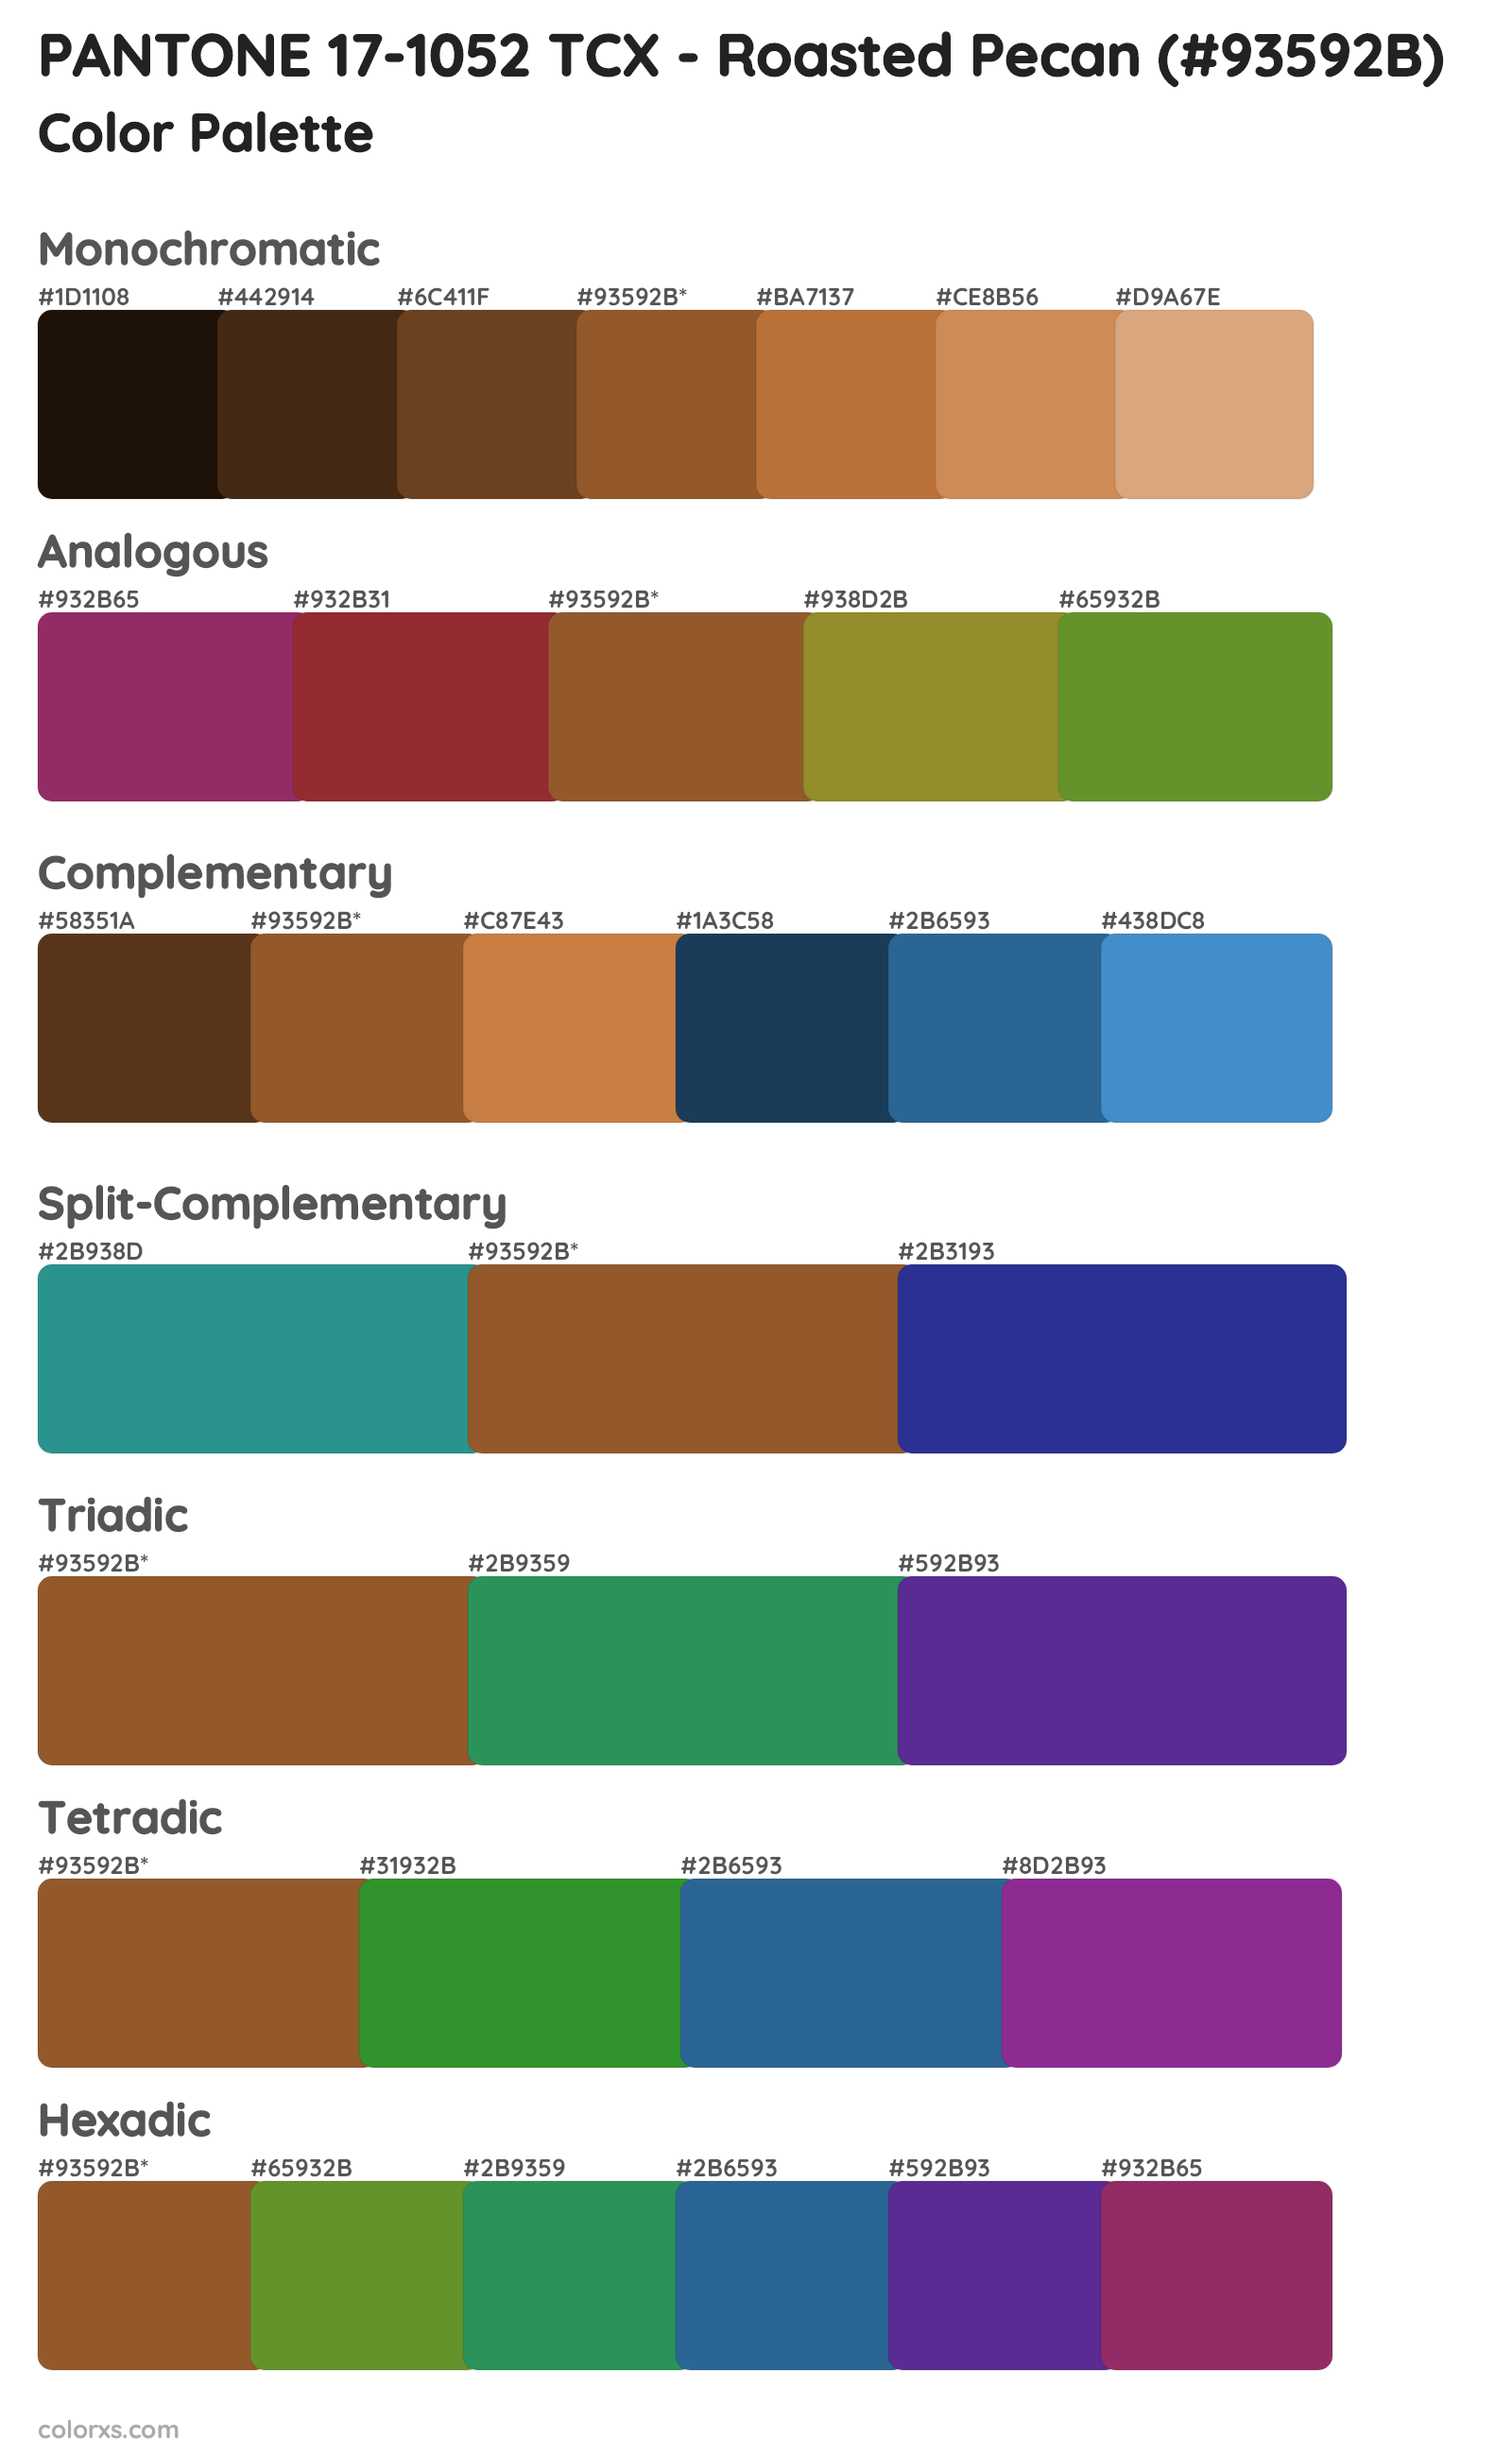 PANTONE 17-1052 TCX - Roasted Pecan Color Scheme Palettes